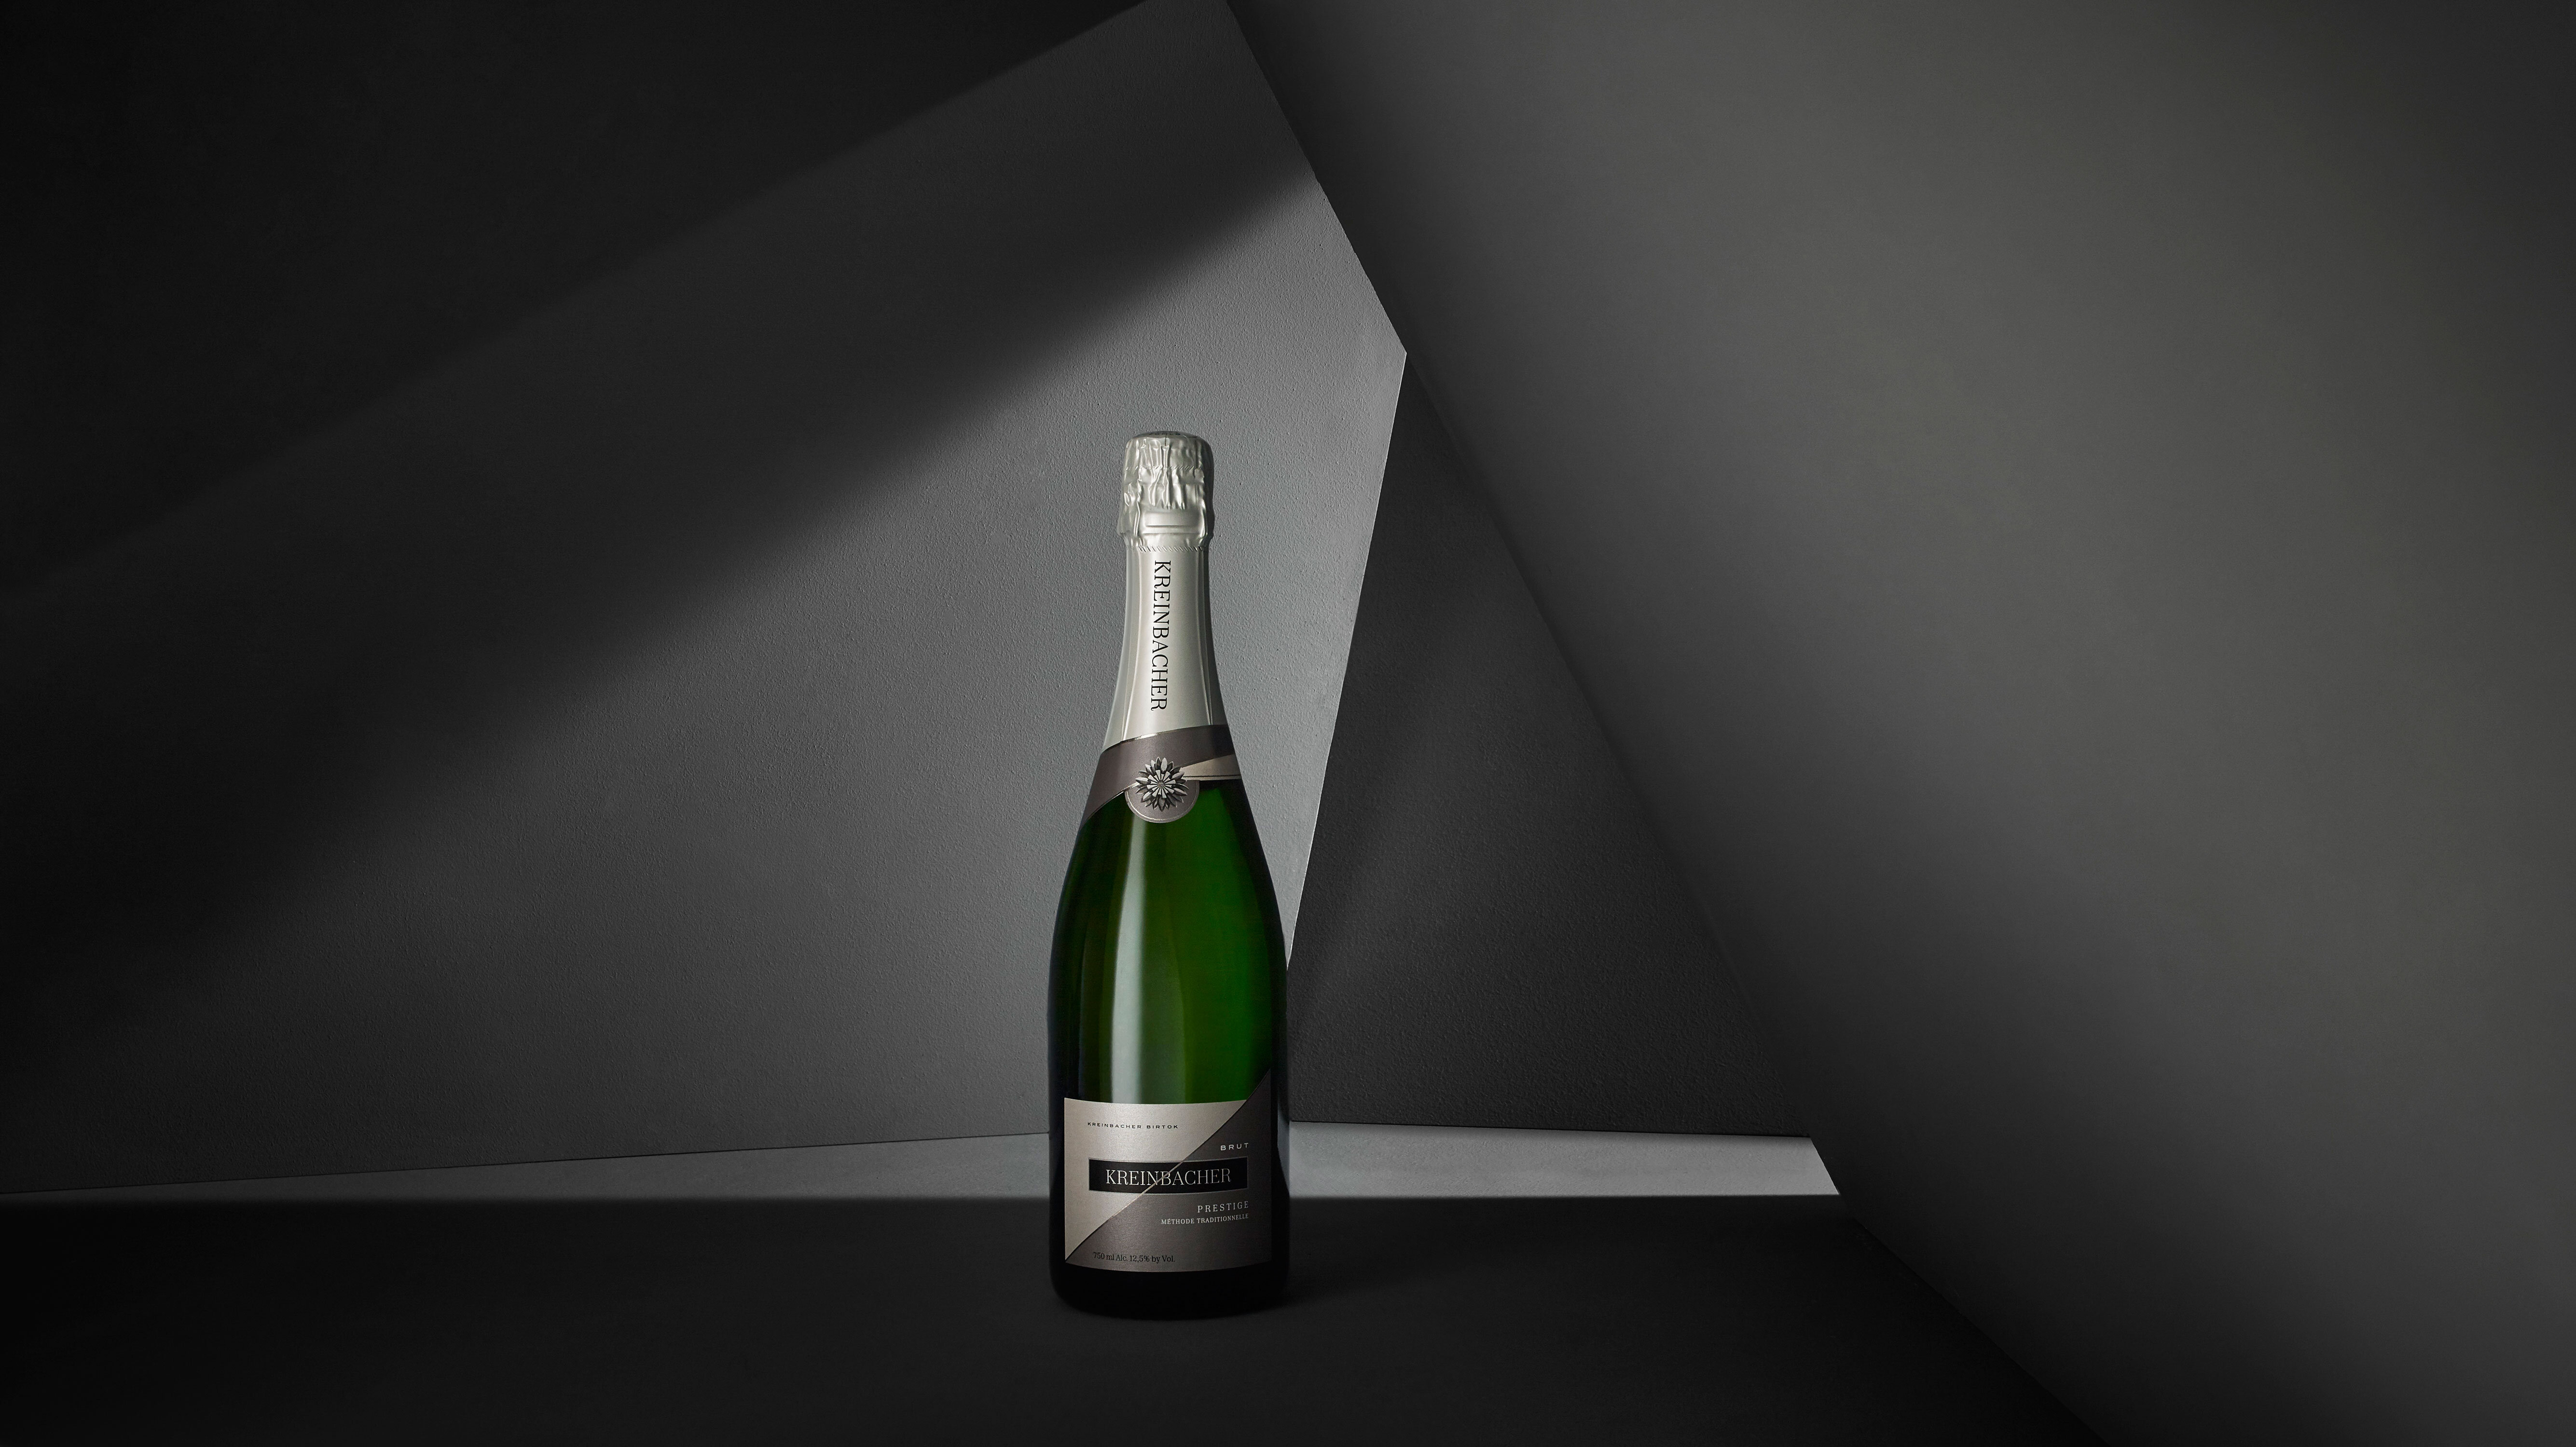 Platinával díjazták a Kreinbacher Birtokot a világ egyik legrangosabb borversenyén